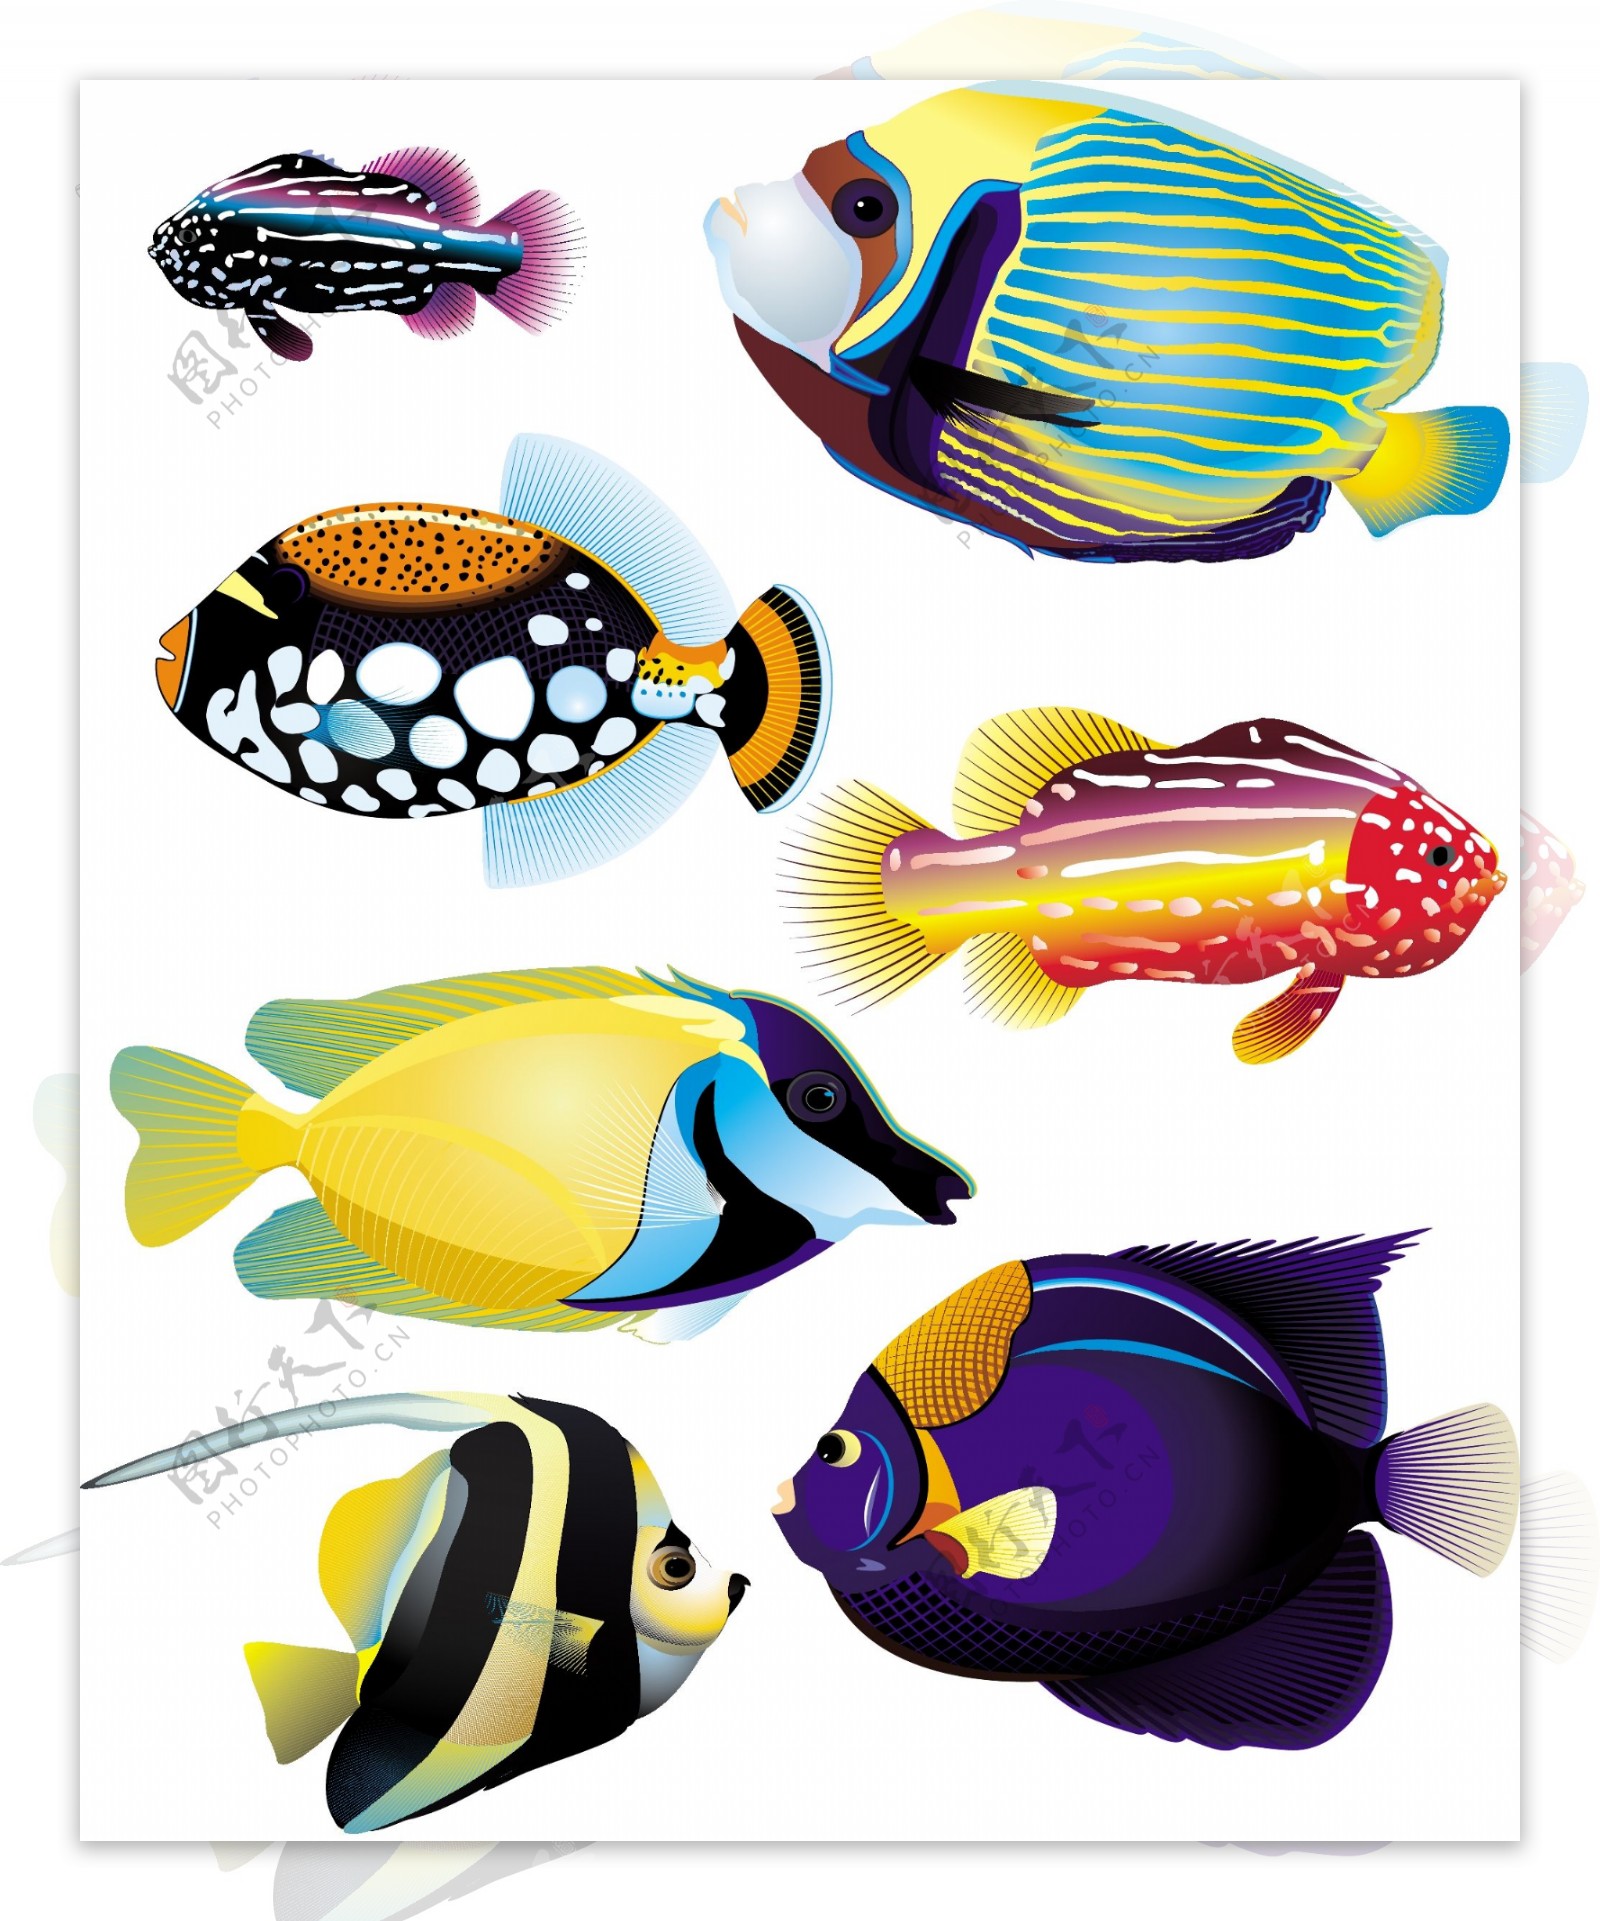 几款色彩艳丽的海洋鱼类矢量素材